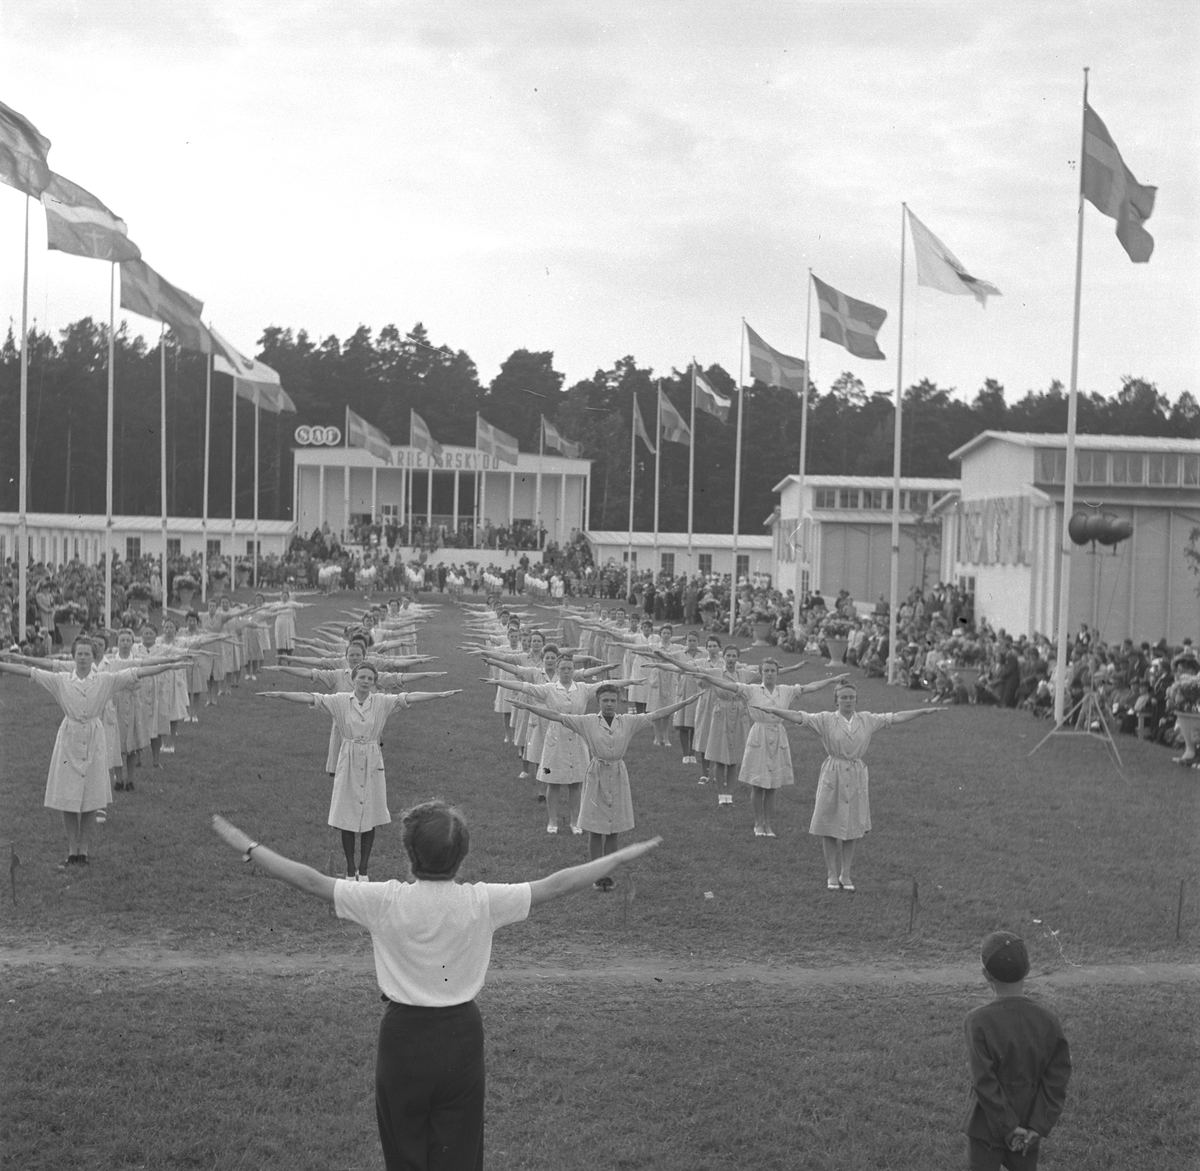 Gävleutställningen 1946
arrangerades 21 juni - 4 augusti. En utställning med anledning av Gävle stads 500-årsjubileum. På 350.000 kv.m. visade 530 utställare sina produkter. Utställningen besöktes av ca 760.000 personer.

Gymnastikuppförande av Tobaksmonopolets kvinnliga anställda